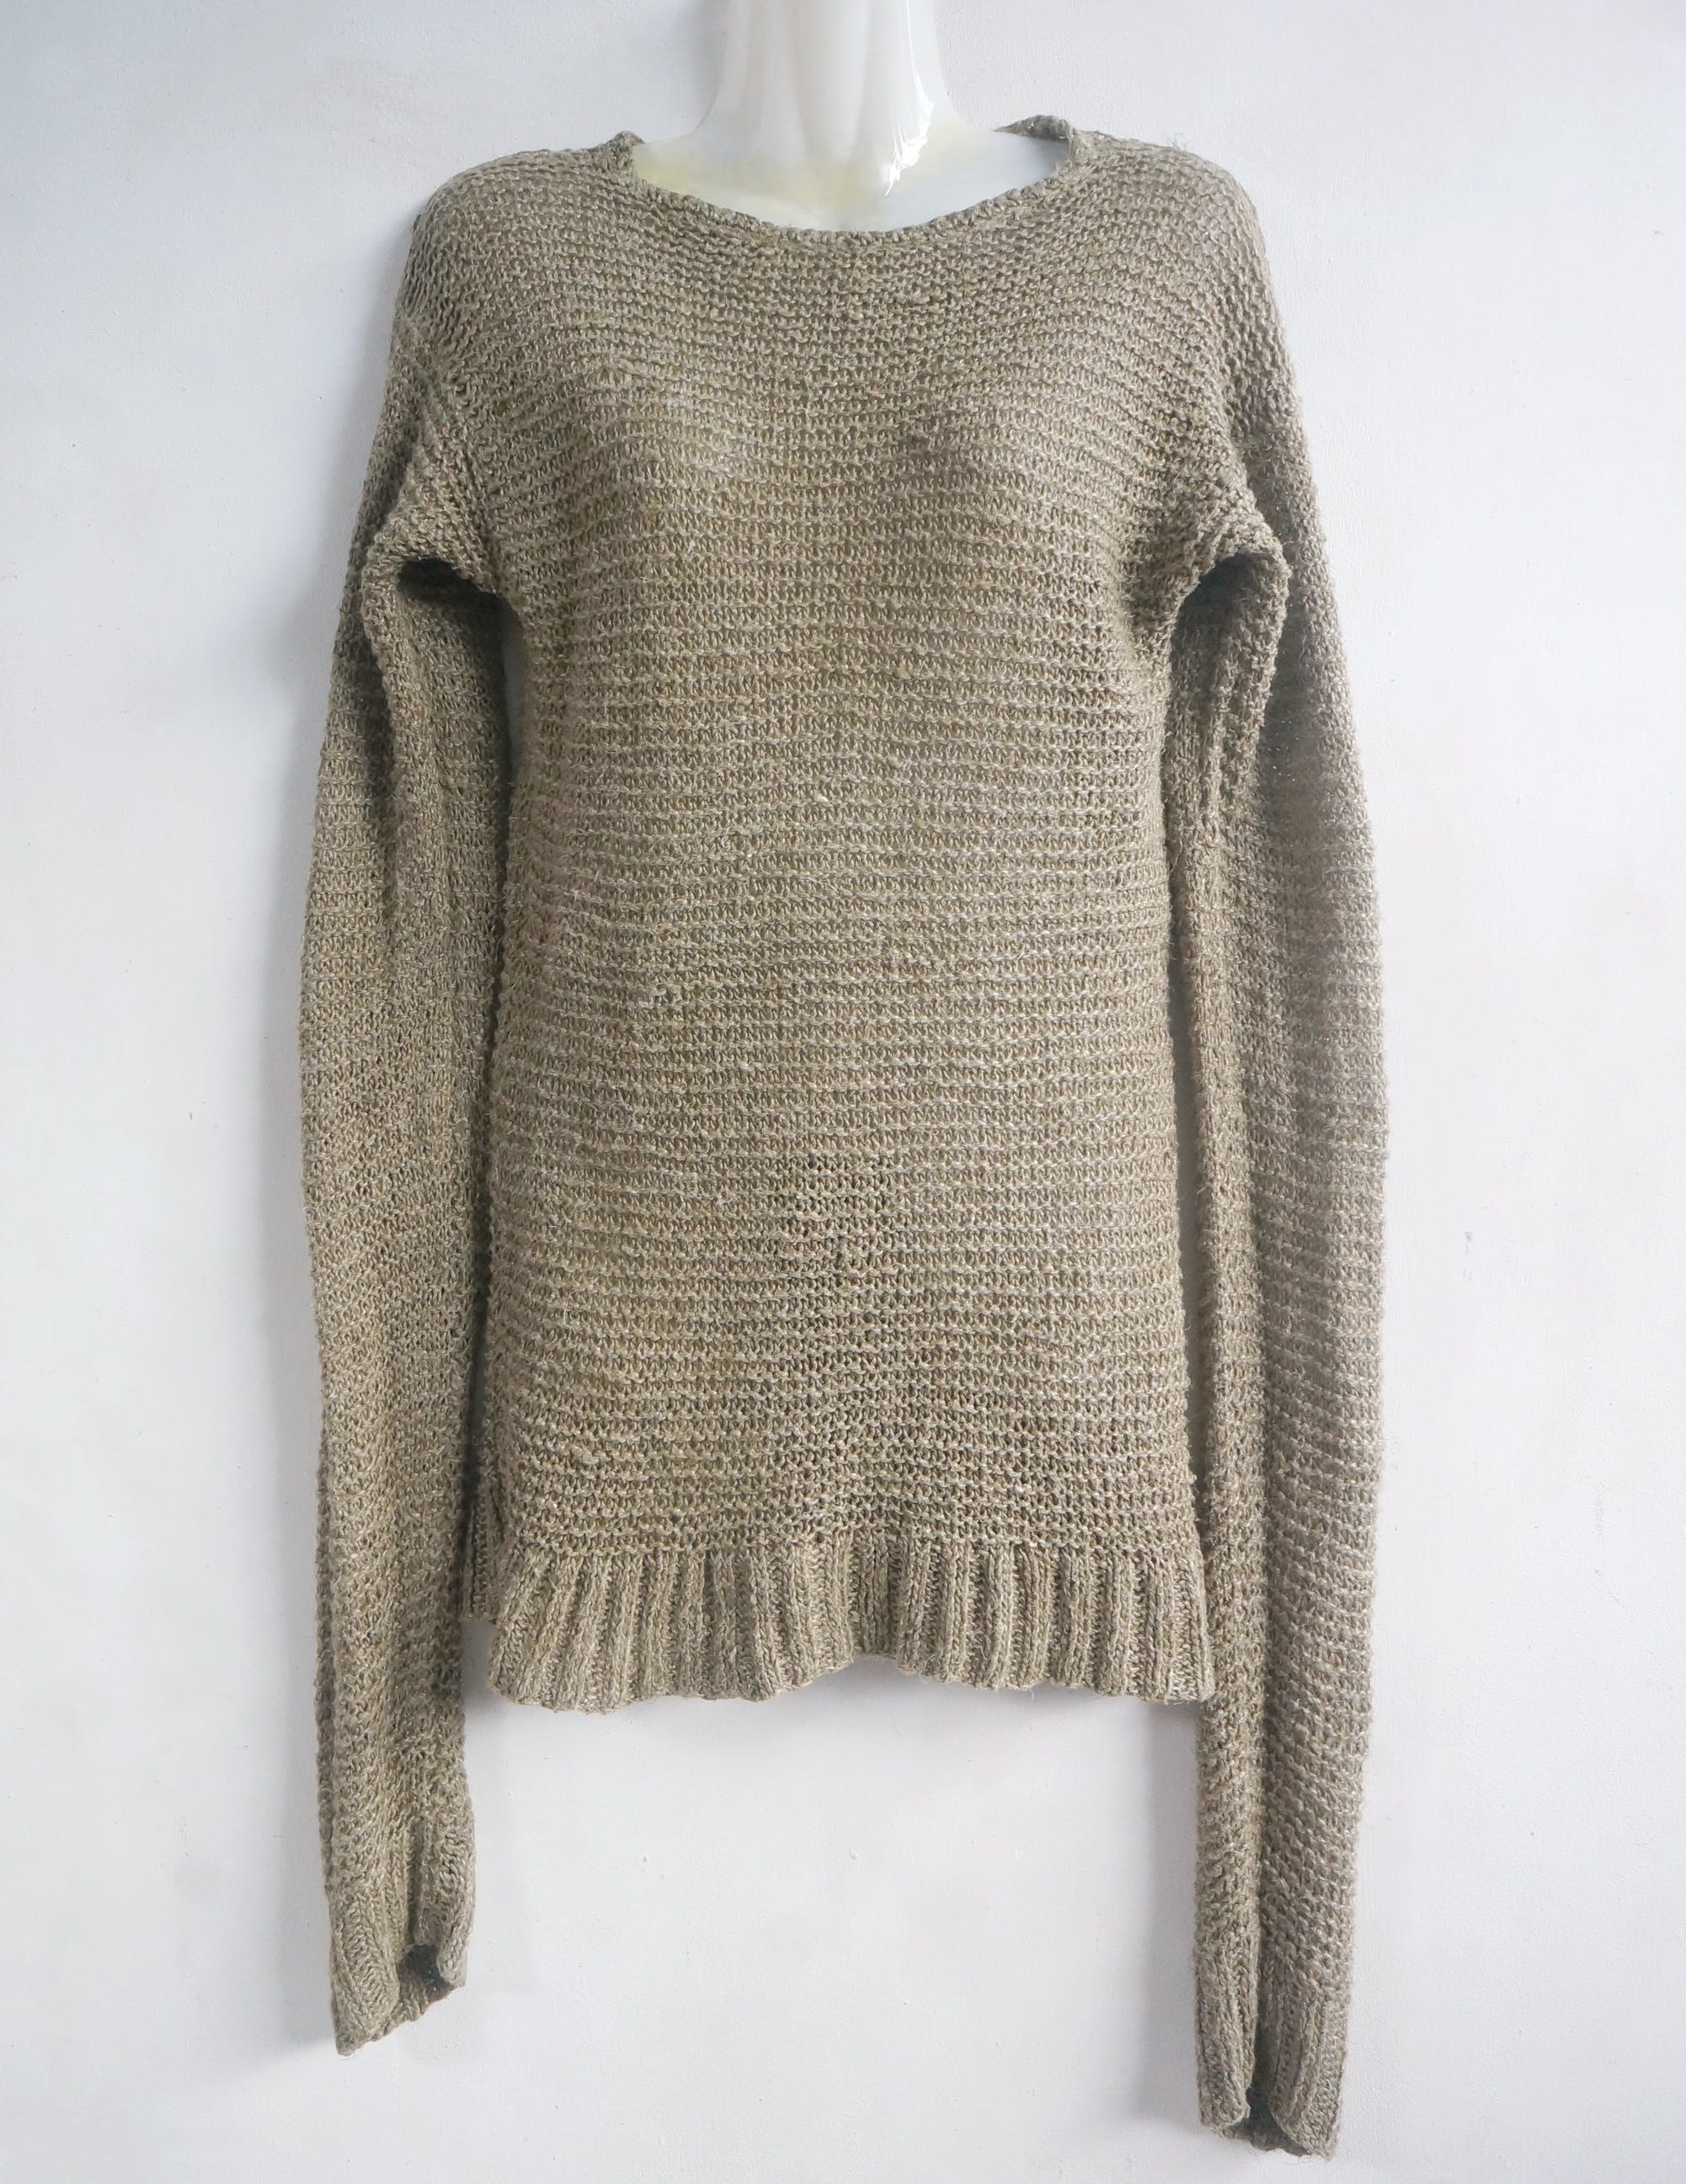 RALPH LAUREN Hemp Knit Pullover Sweater - 1